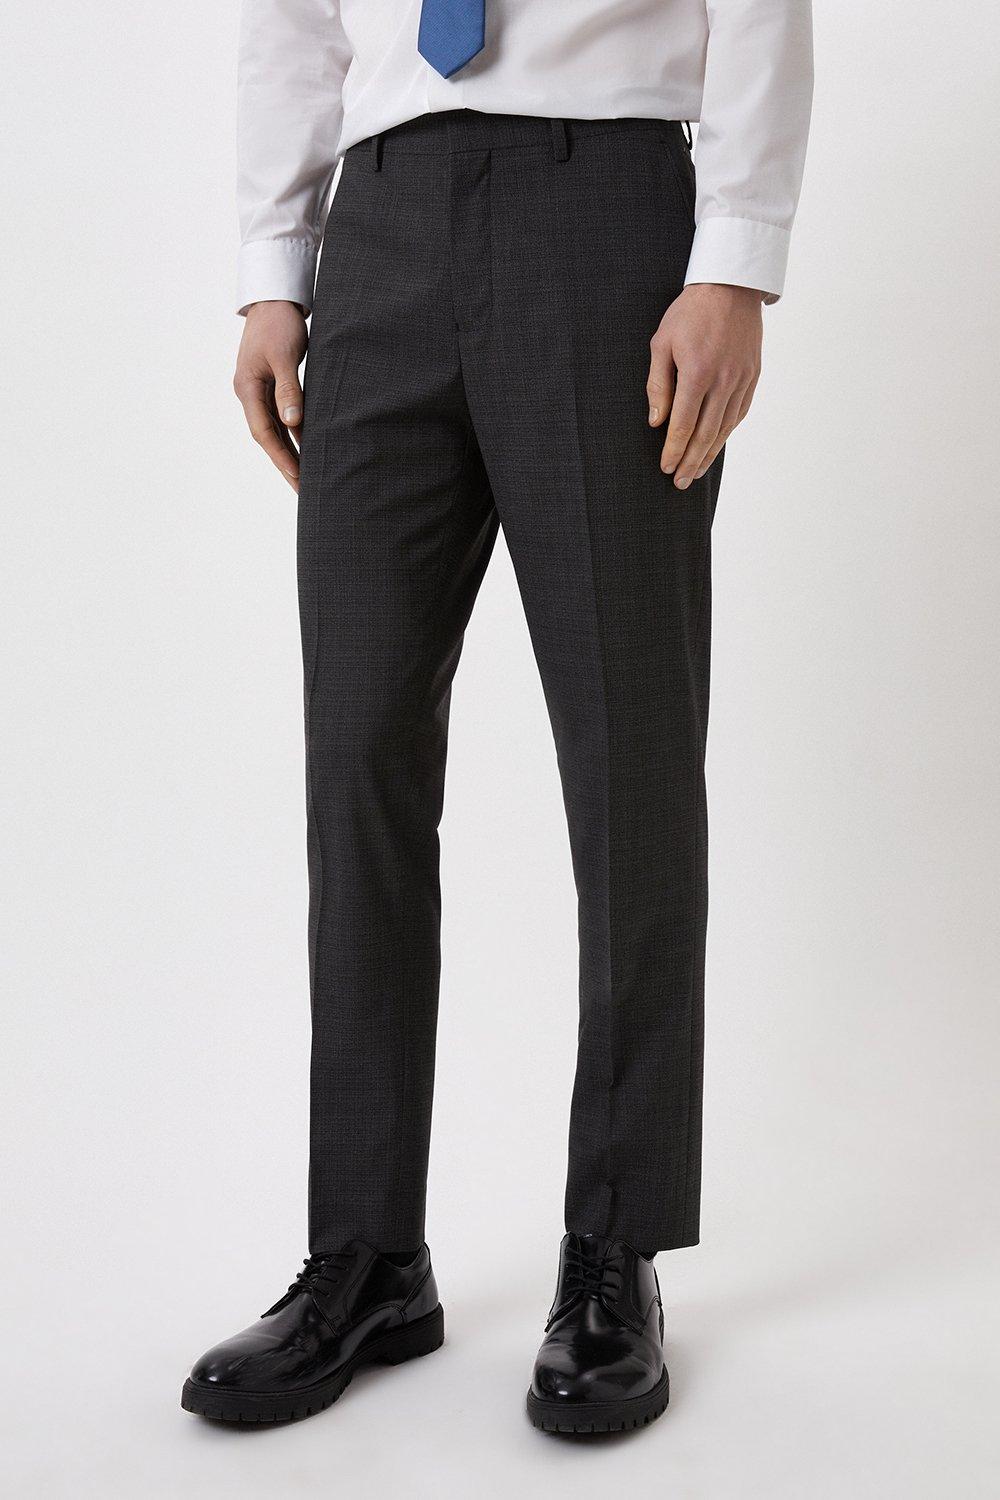 Suits | Slim Fit Charcoal Semi Plain Suit Trousers | Burton